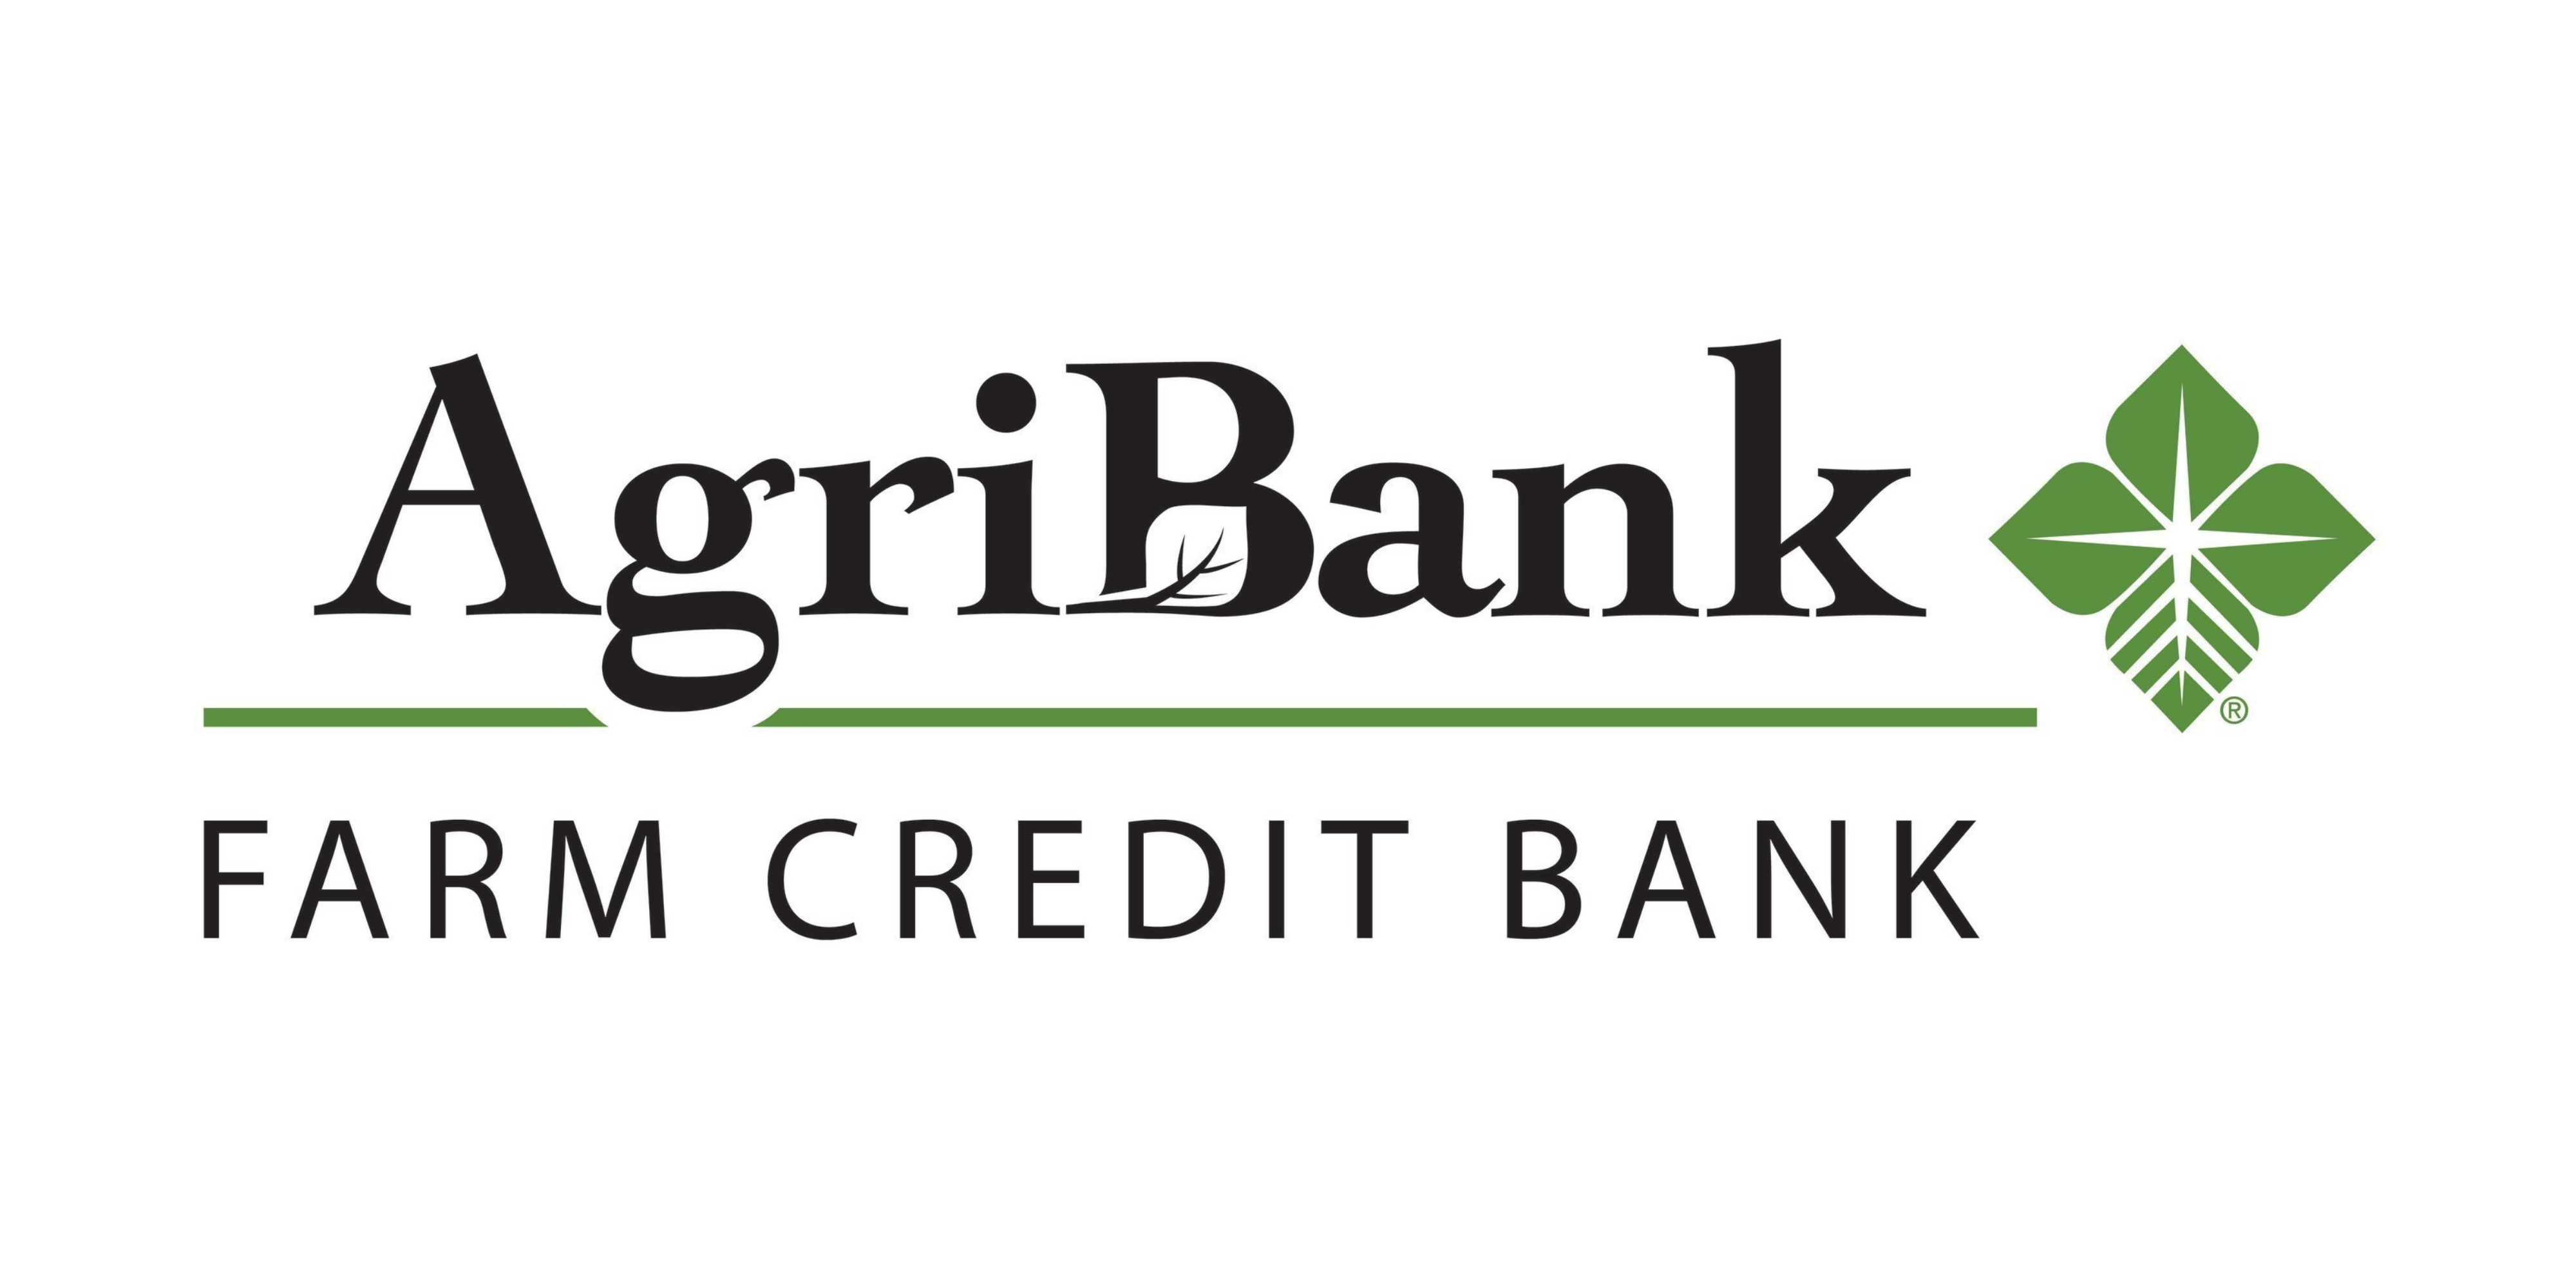 Agribank Farm Credit Bank